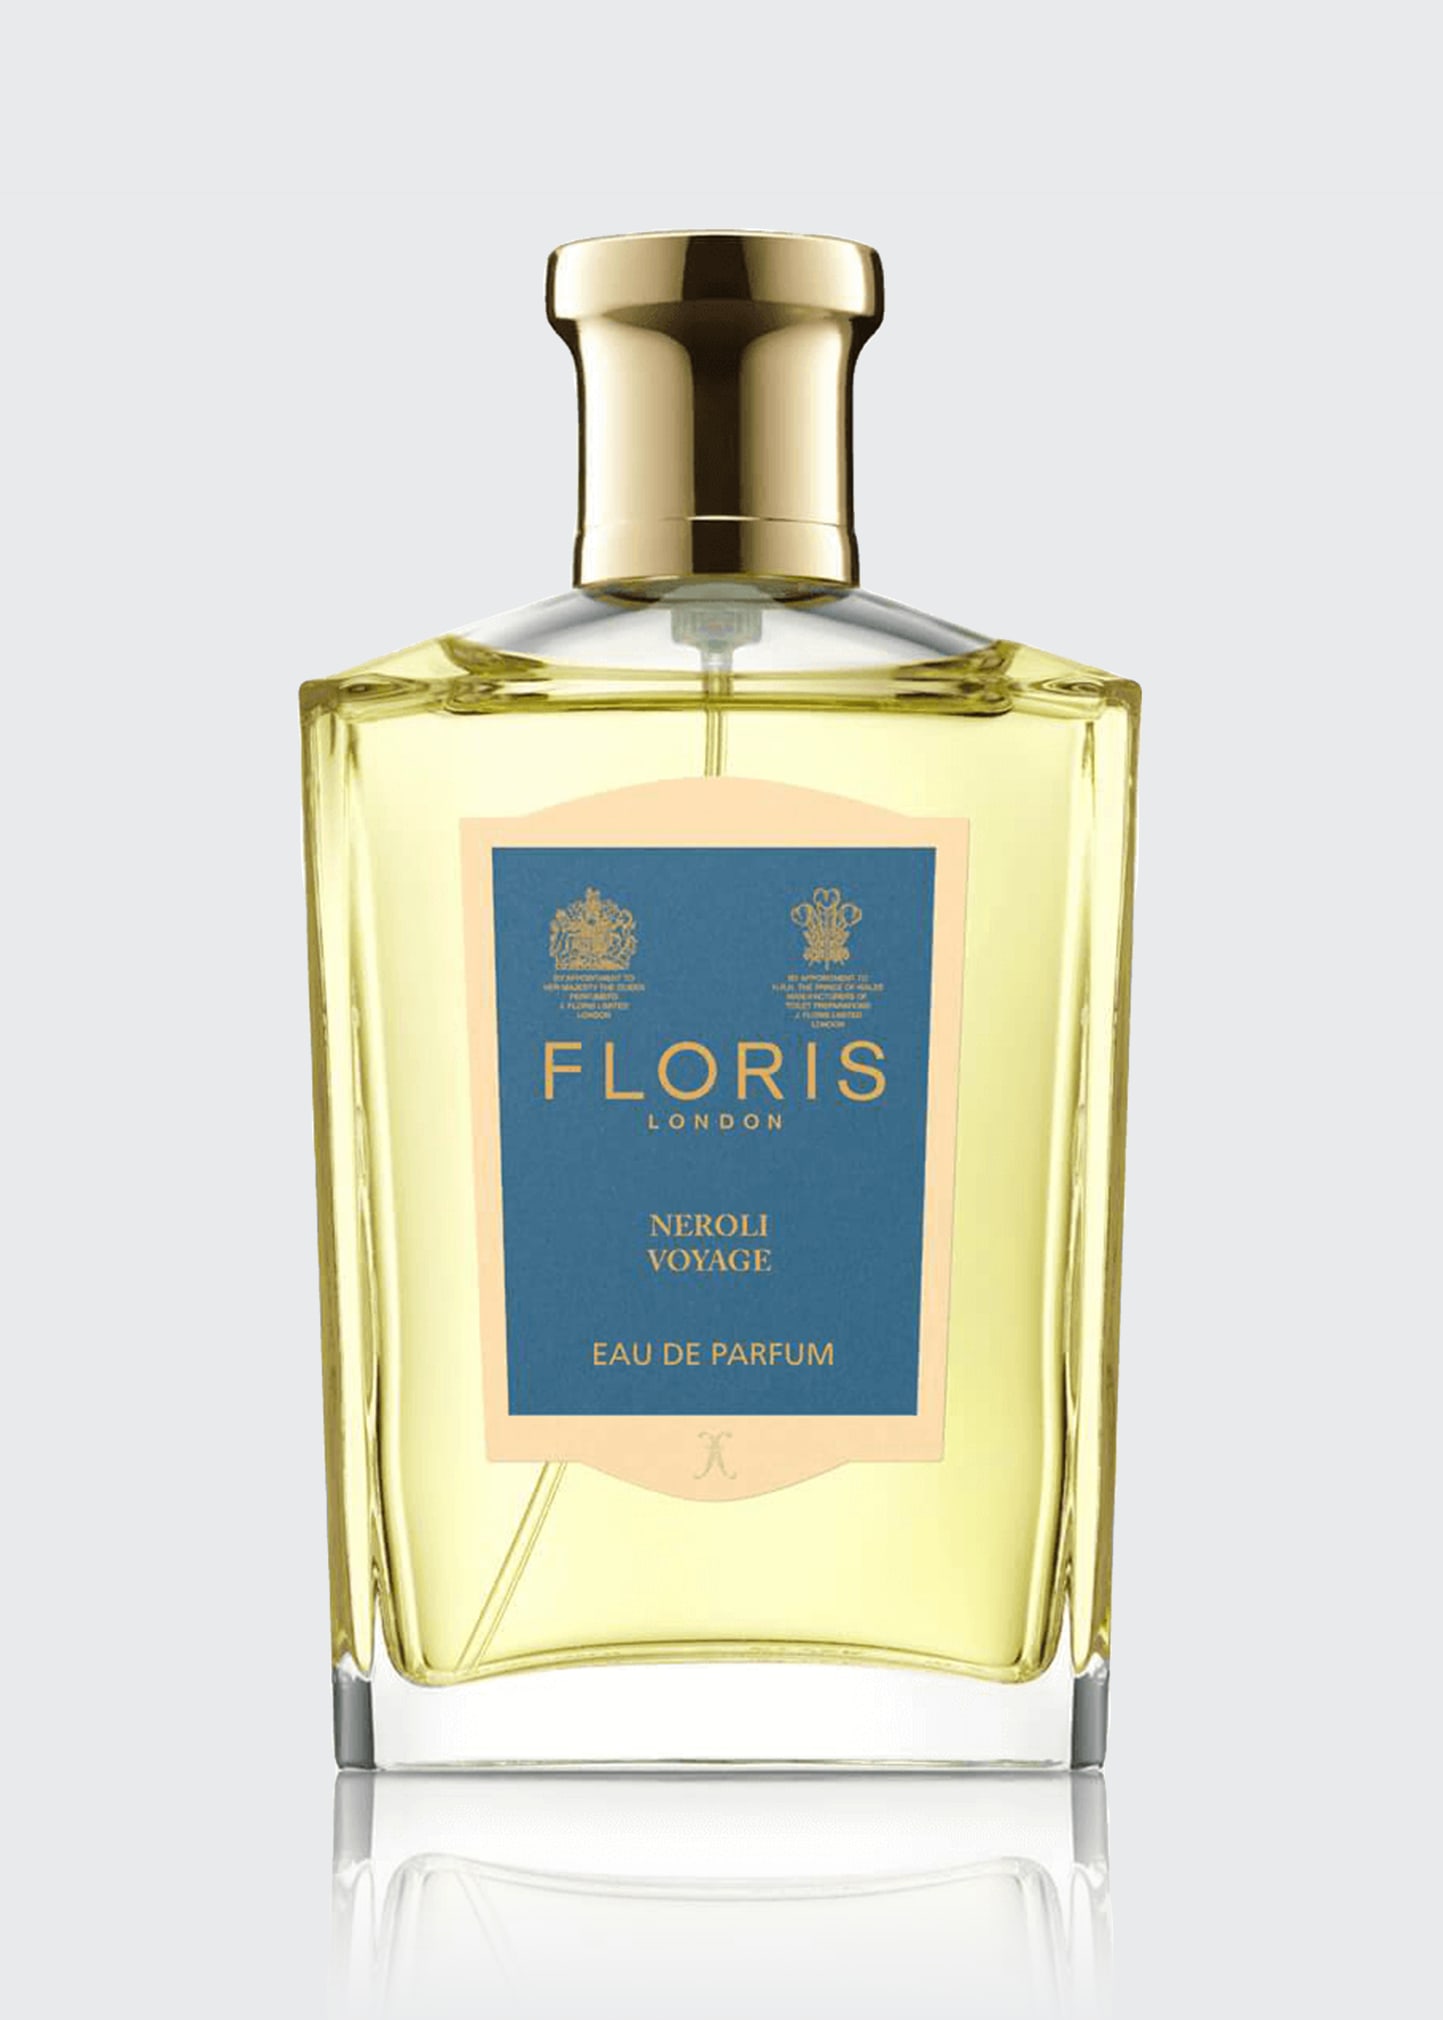 Floris London 3.4 oz. Neroli Voyage Eau de Parfum